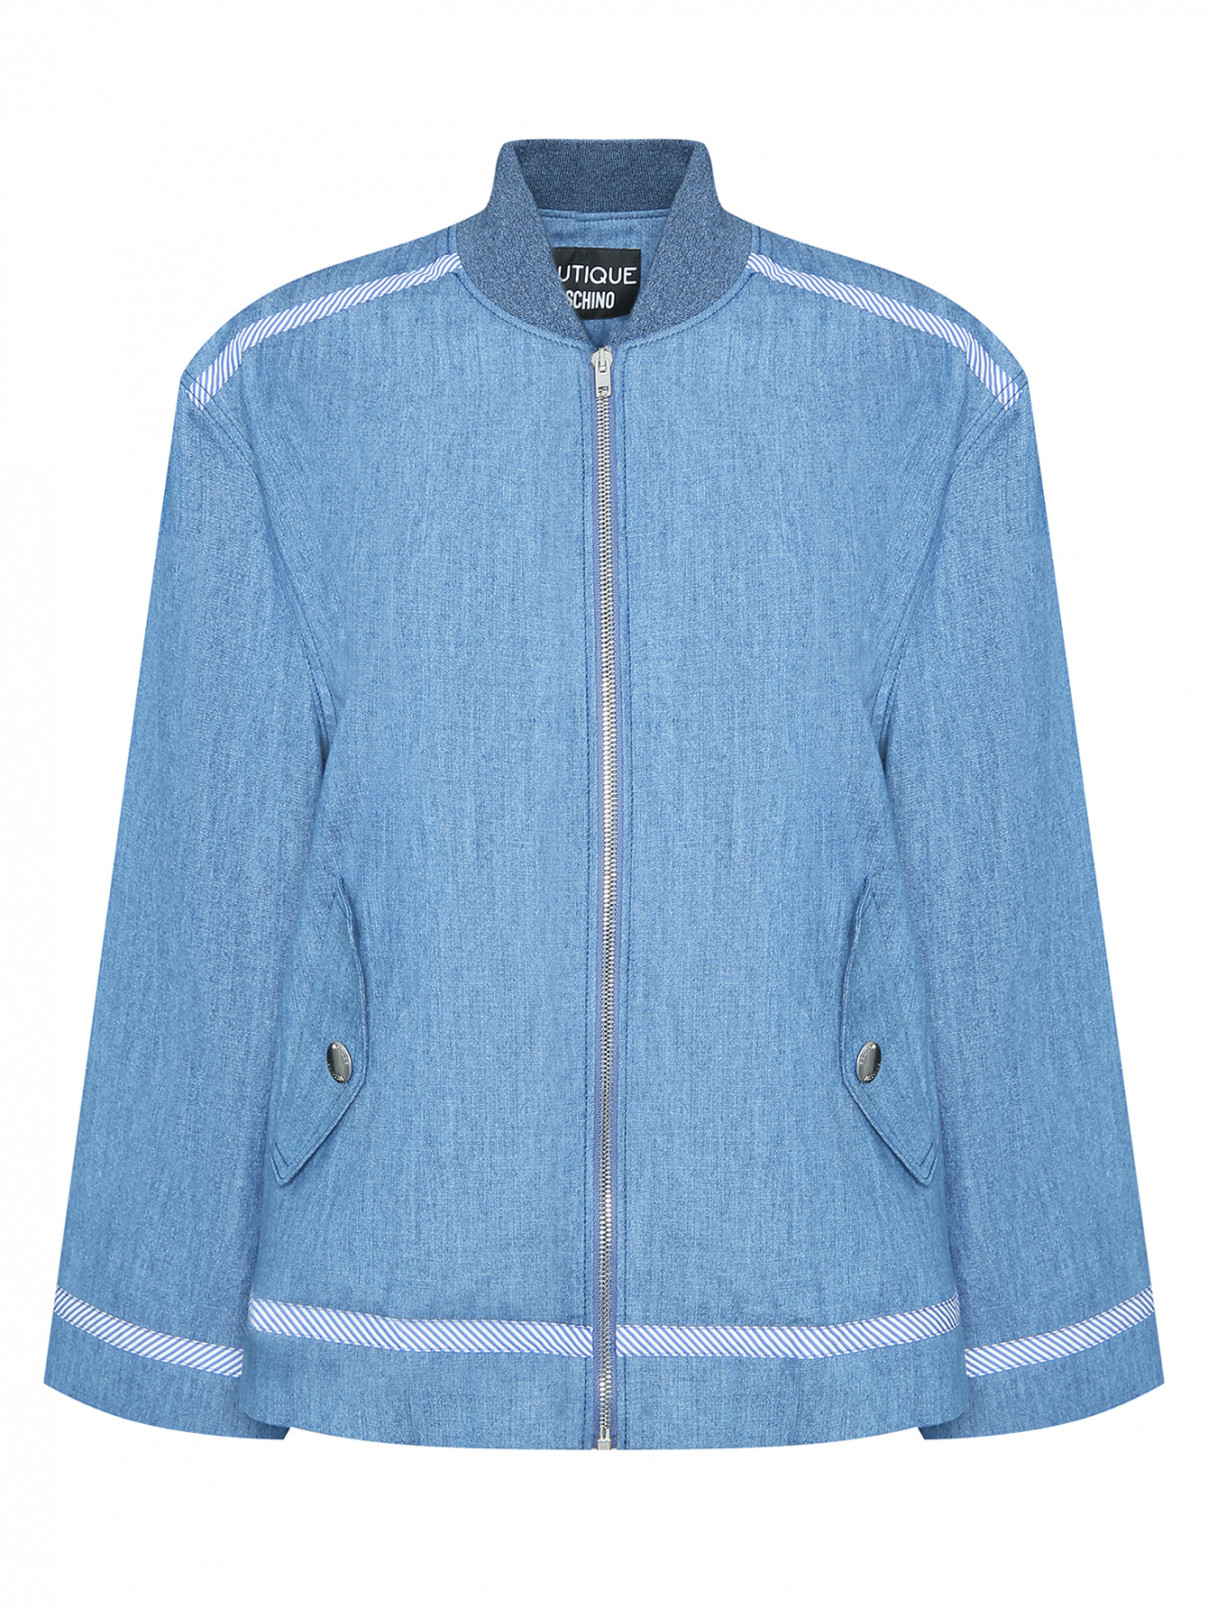 Джинсовая куртка на молнии Moschino Boutique  –  Общий вид  – Цвет:  Синий